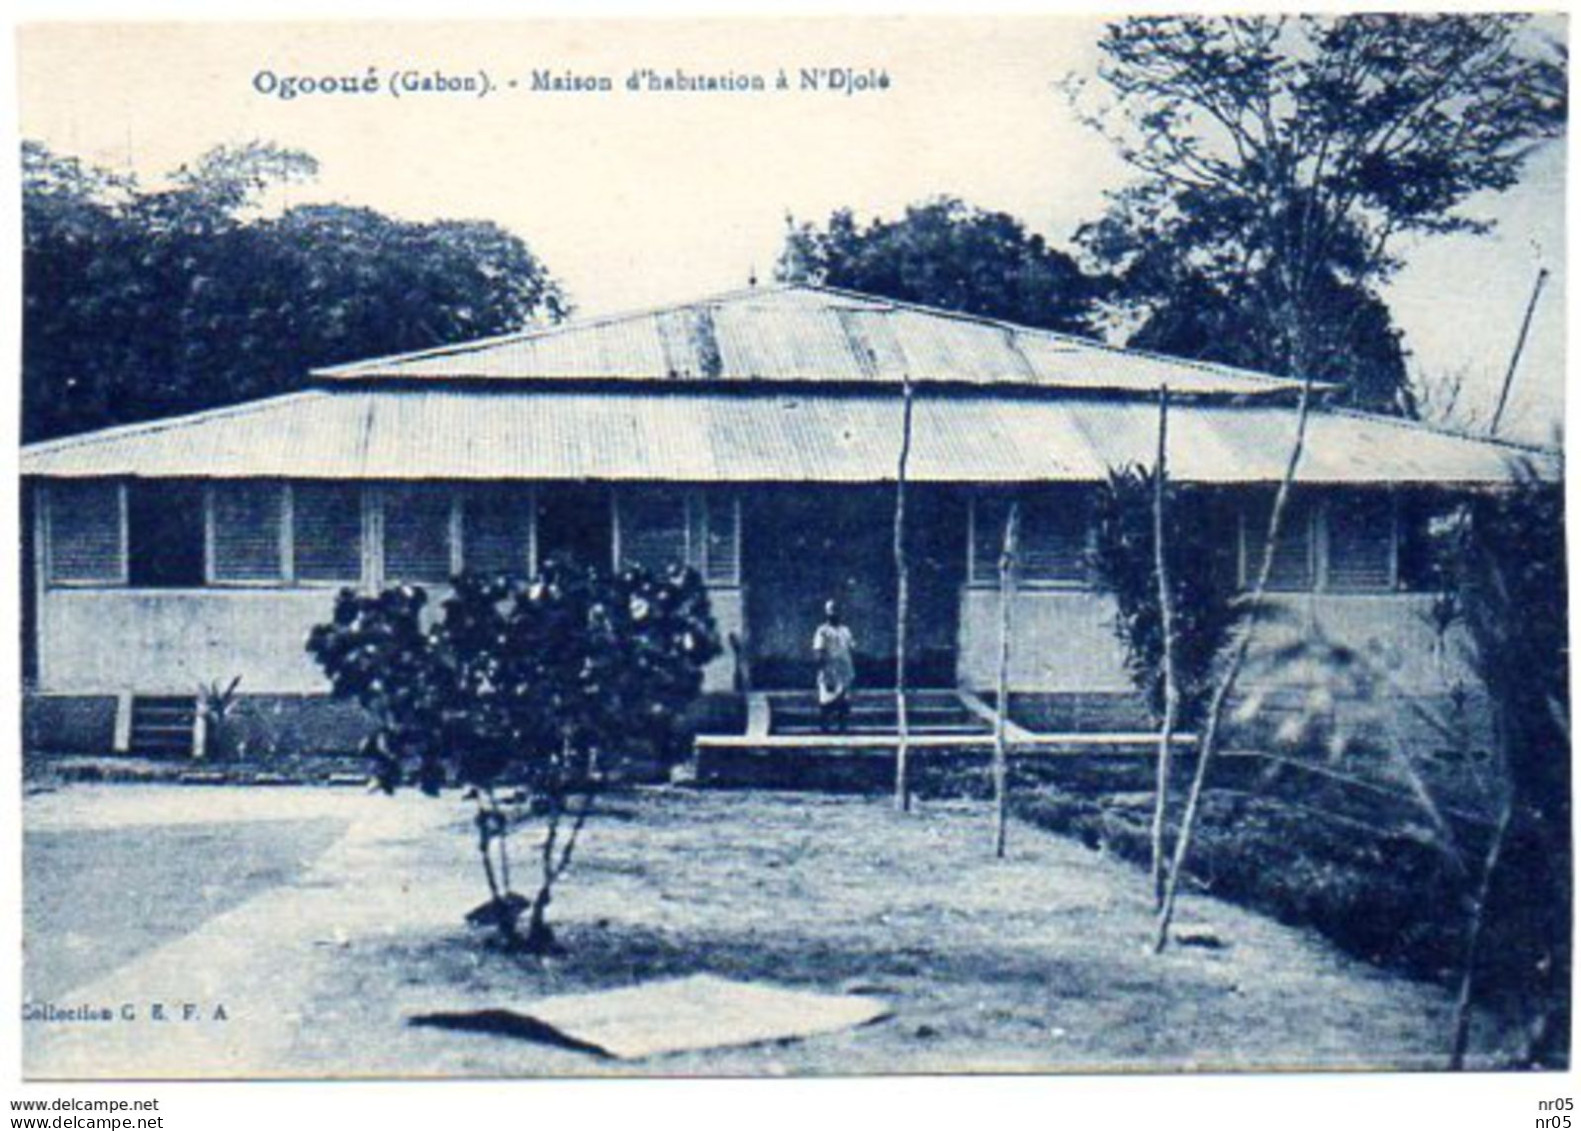 OGOOUE - Maison D'Habitation à N'Djolé - GABON ( Afrique ) - - Gabun